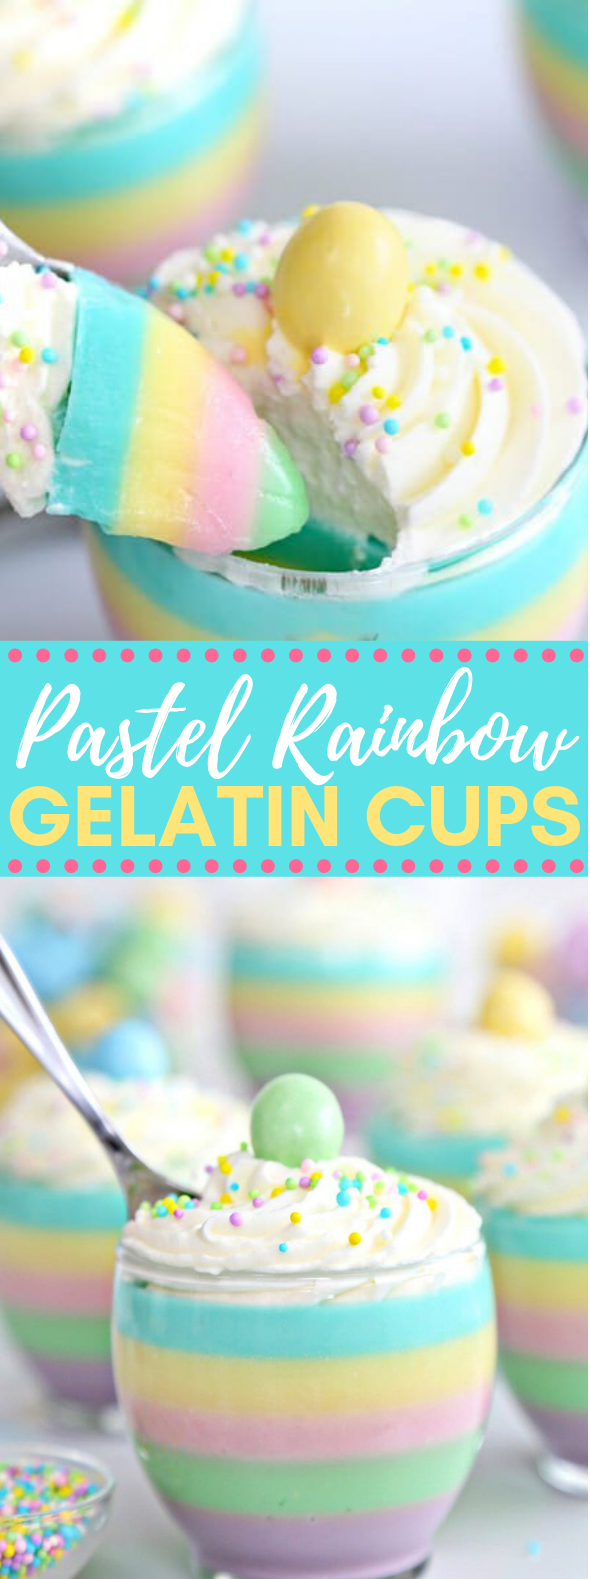 PASTEL RAINBOW GELATIN CUPS #desserts #kidfriendly